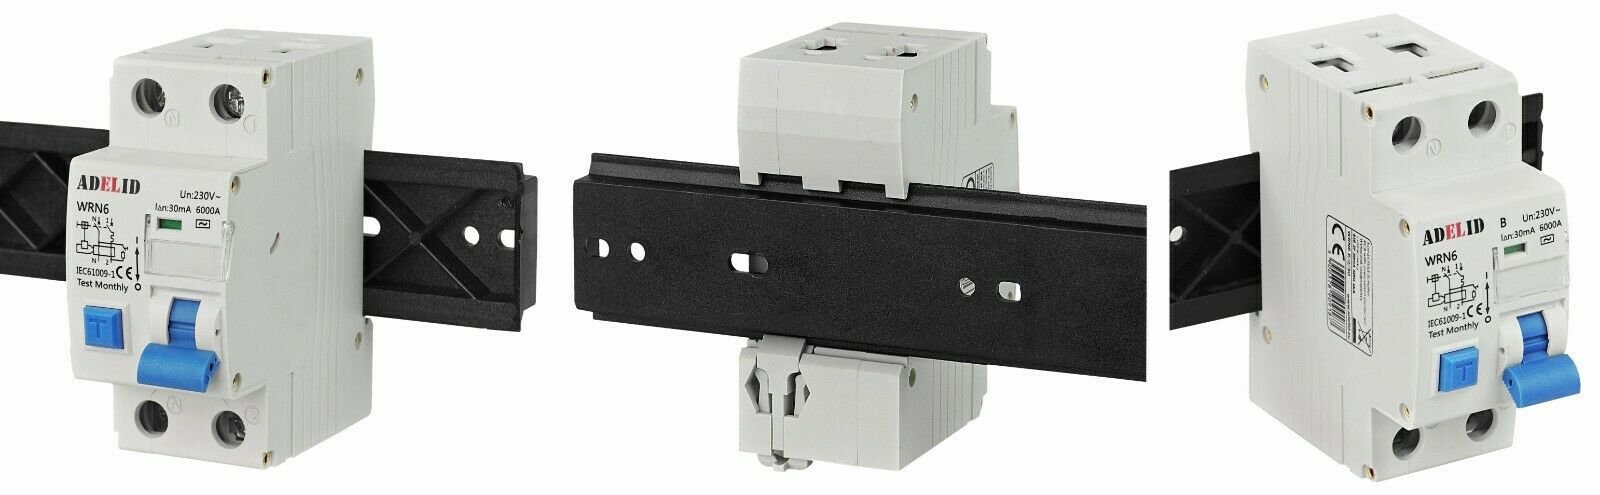 B10A Schalter, ADELID FI/LS-Schutzschalter 2-polig Kombi 1P+N 30mA Fehlerstrom-/Leitungsschutzschalter